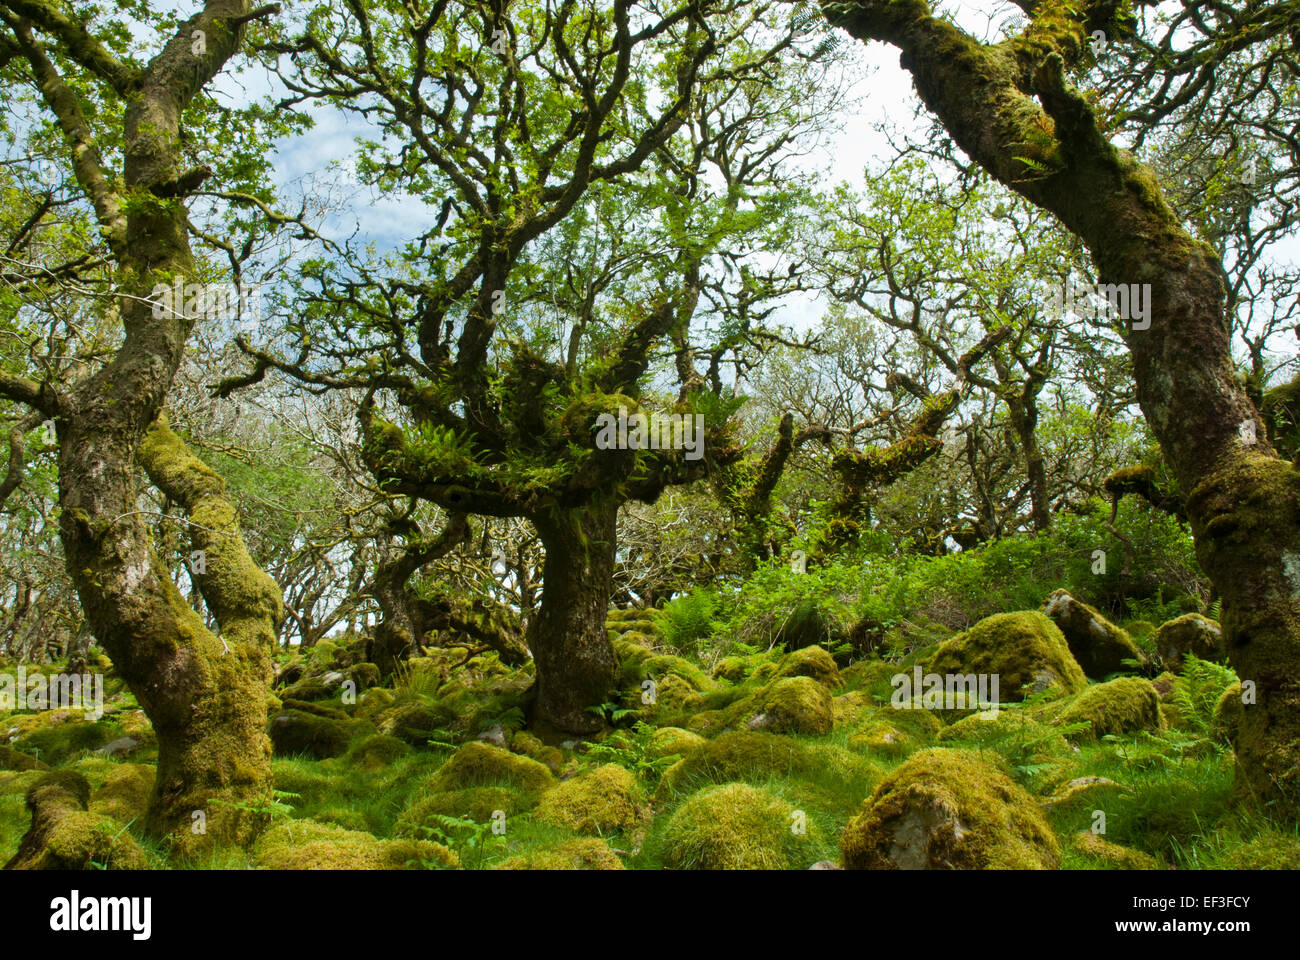 Wistman Holz, Dartmoor, Devon UK. Knorrigen alten Zwerg Eichen und Granitfelsen in grünen Moos und Farnen bedeckt. Stockfoto